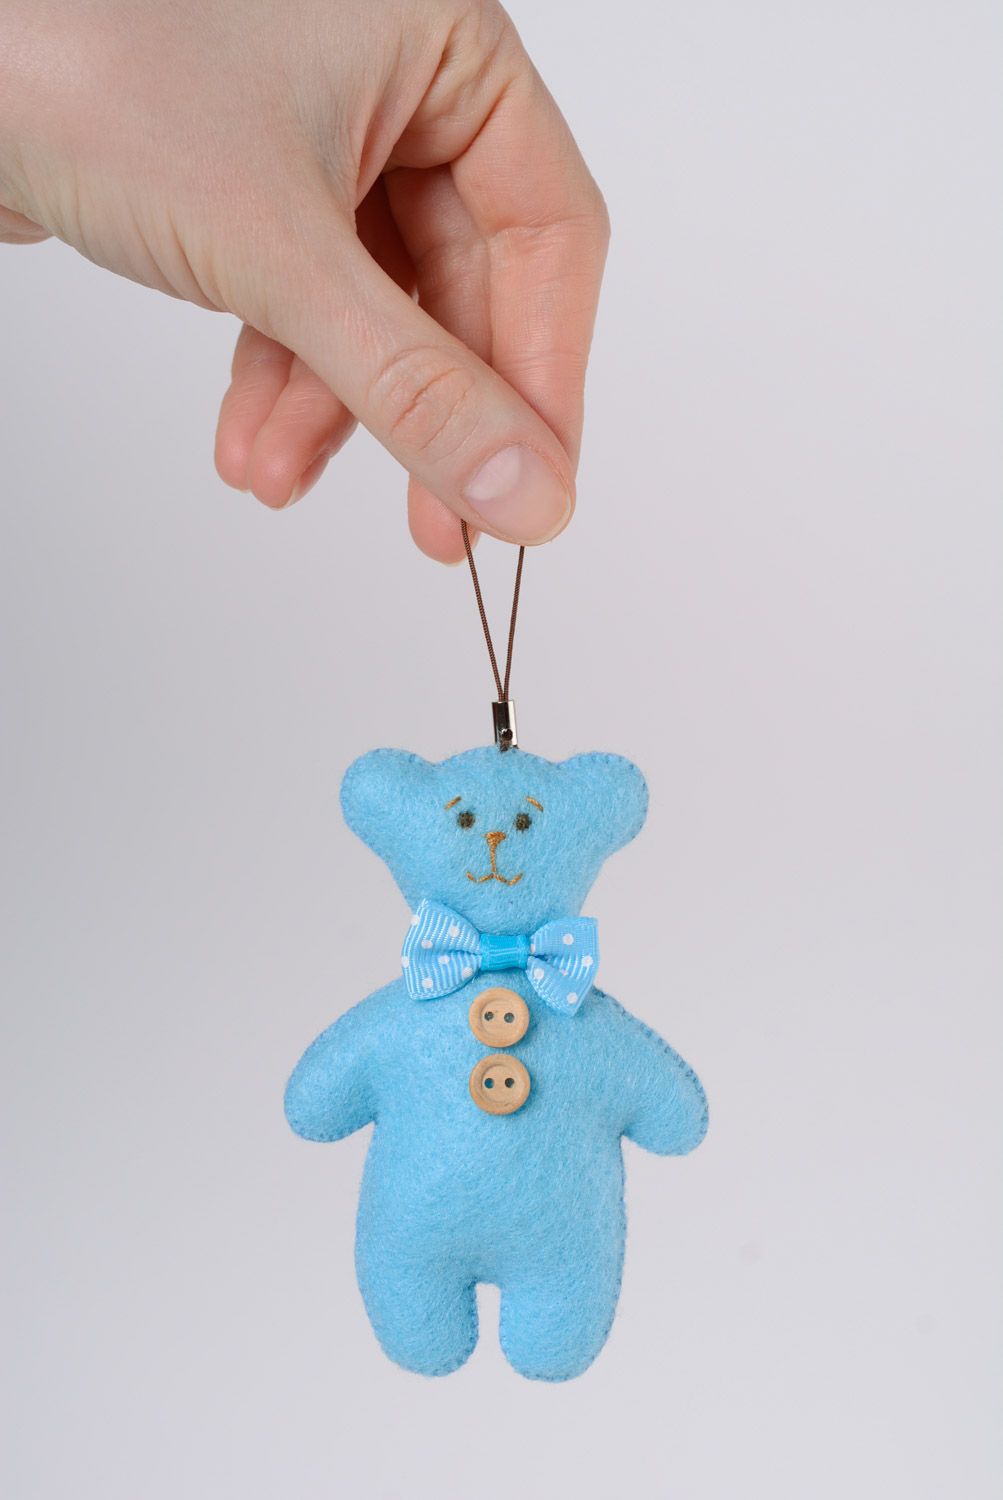 Брелок в виде мишки из фетра игрушка на ключи или сумку голубая ручной работы фото 4